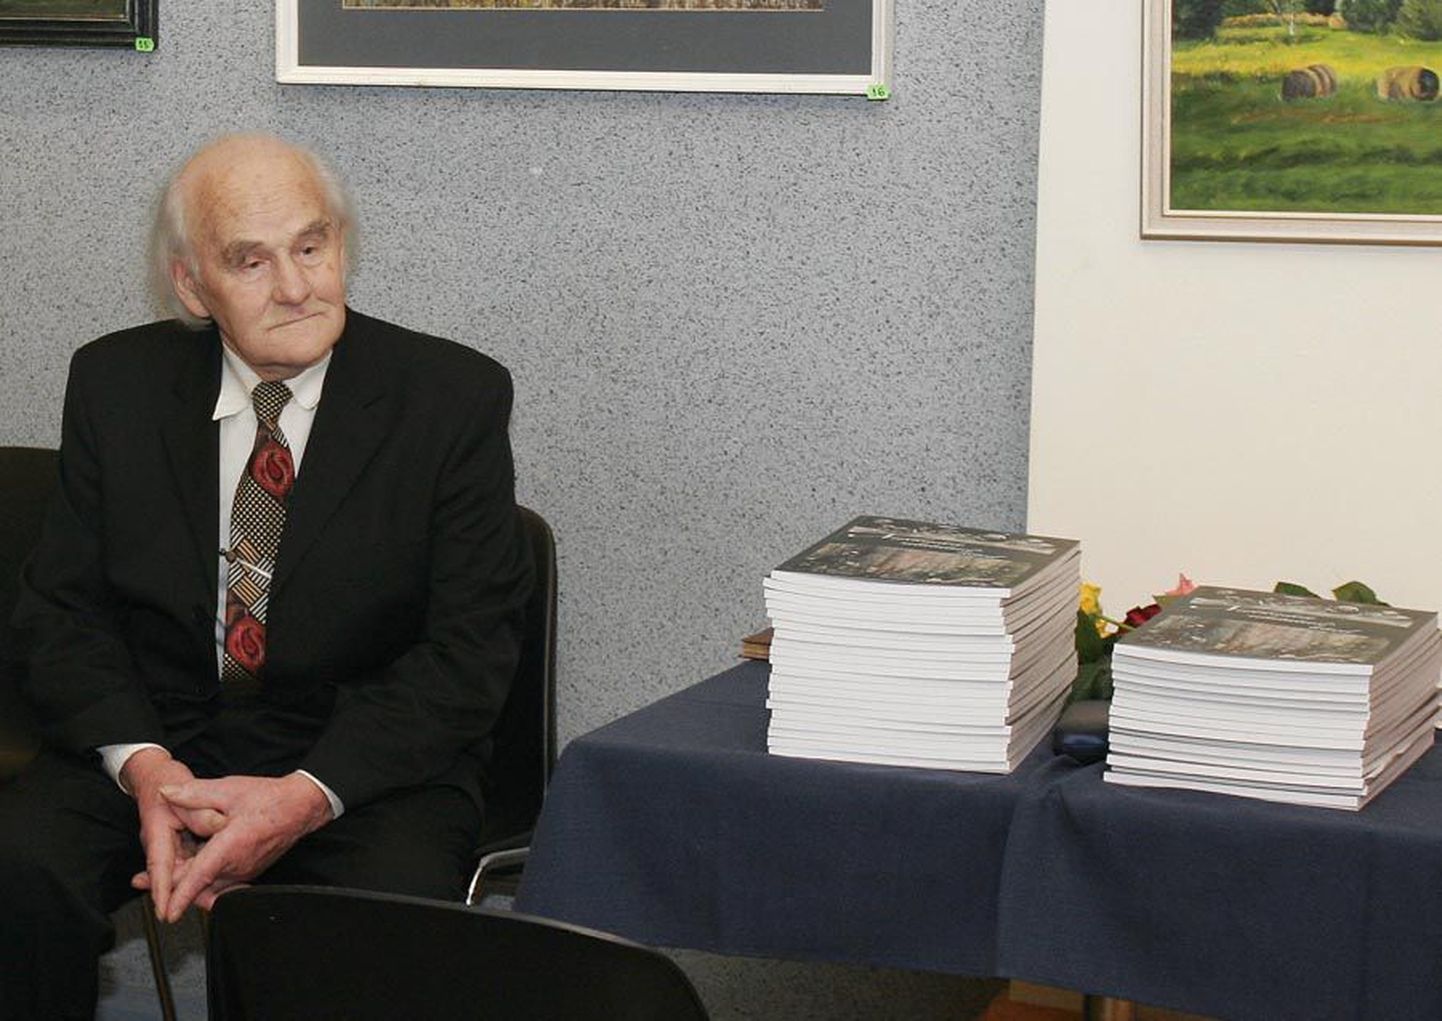 85-aastane Votele Kuusik heitis
kolmapäeval enne kutsutud
sõprade ette astumist pilgu oma raamatule, mille kokkupanekuks oli tal kulunud kaks aastat järjepidevat tööd.